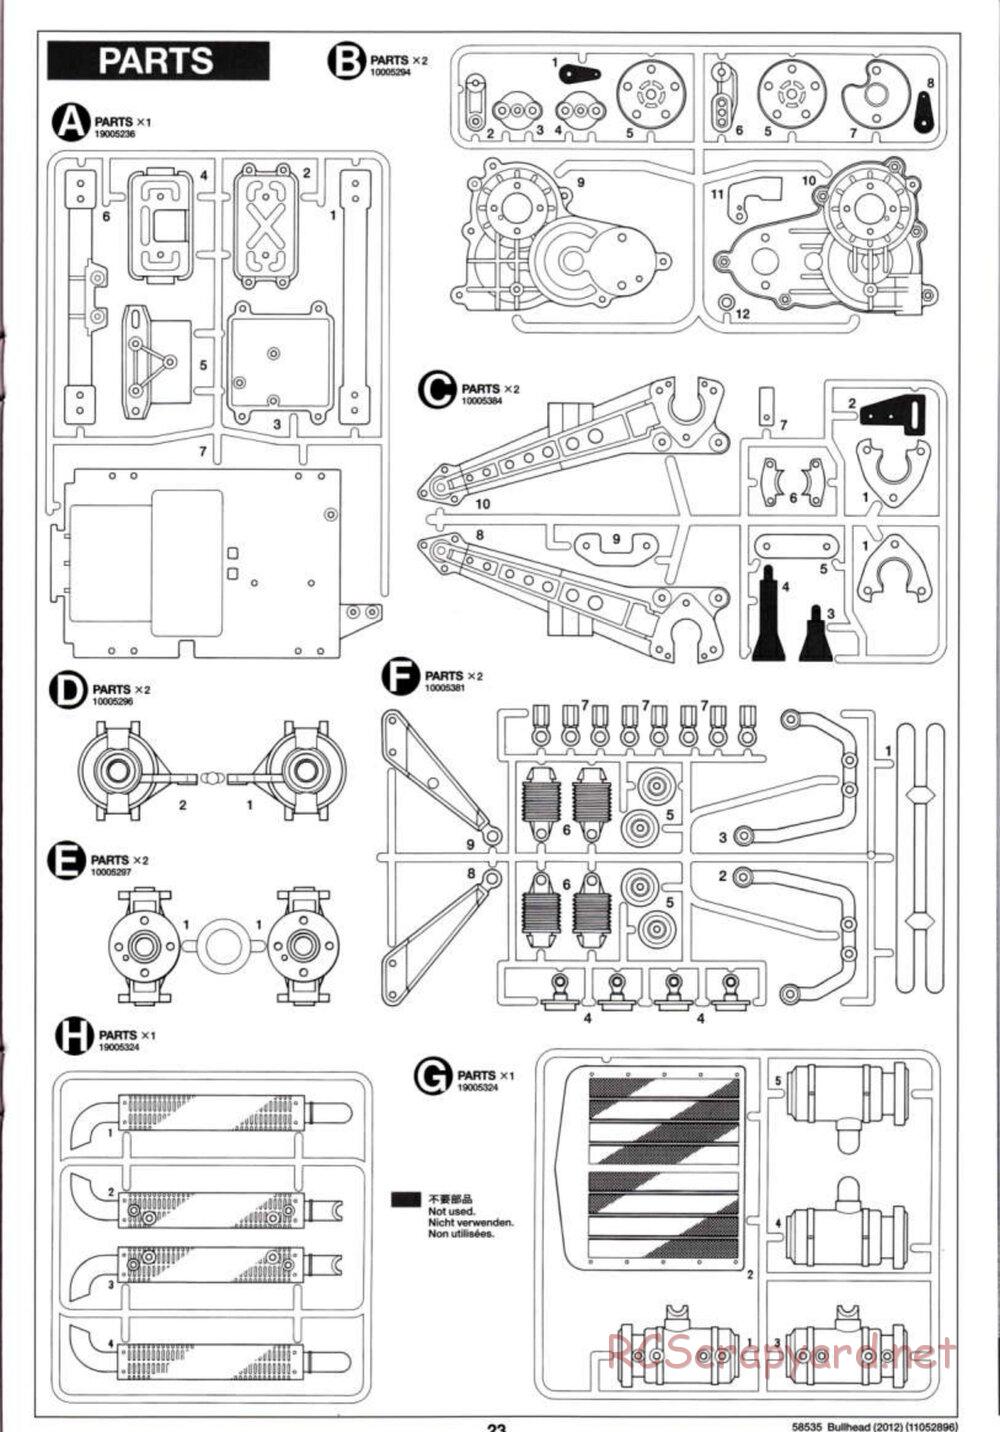 Tamiya - Bullhead 2012 - CB Chassis - Manual - Page 23